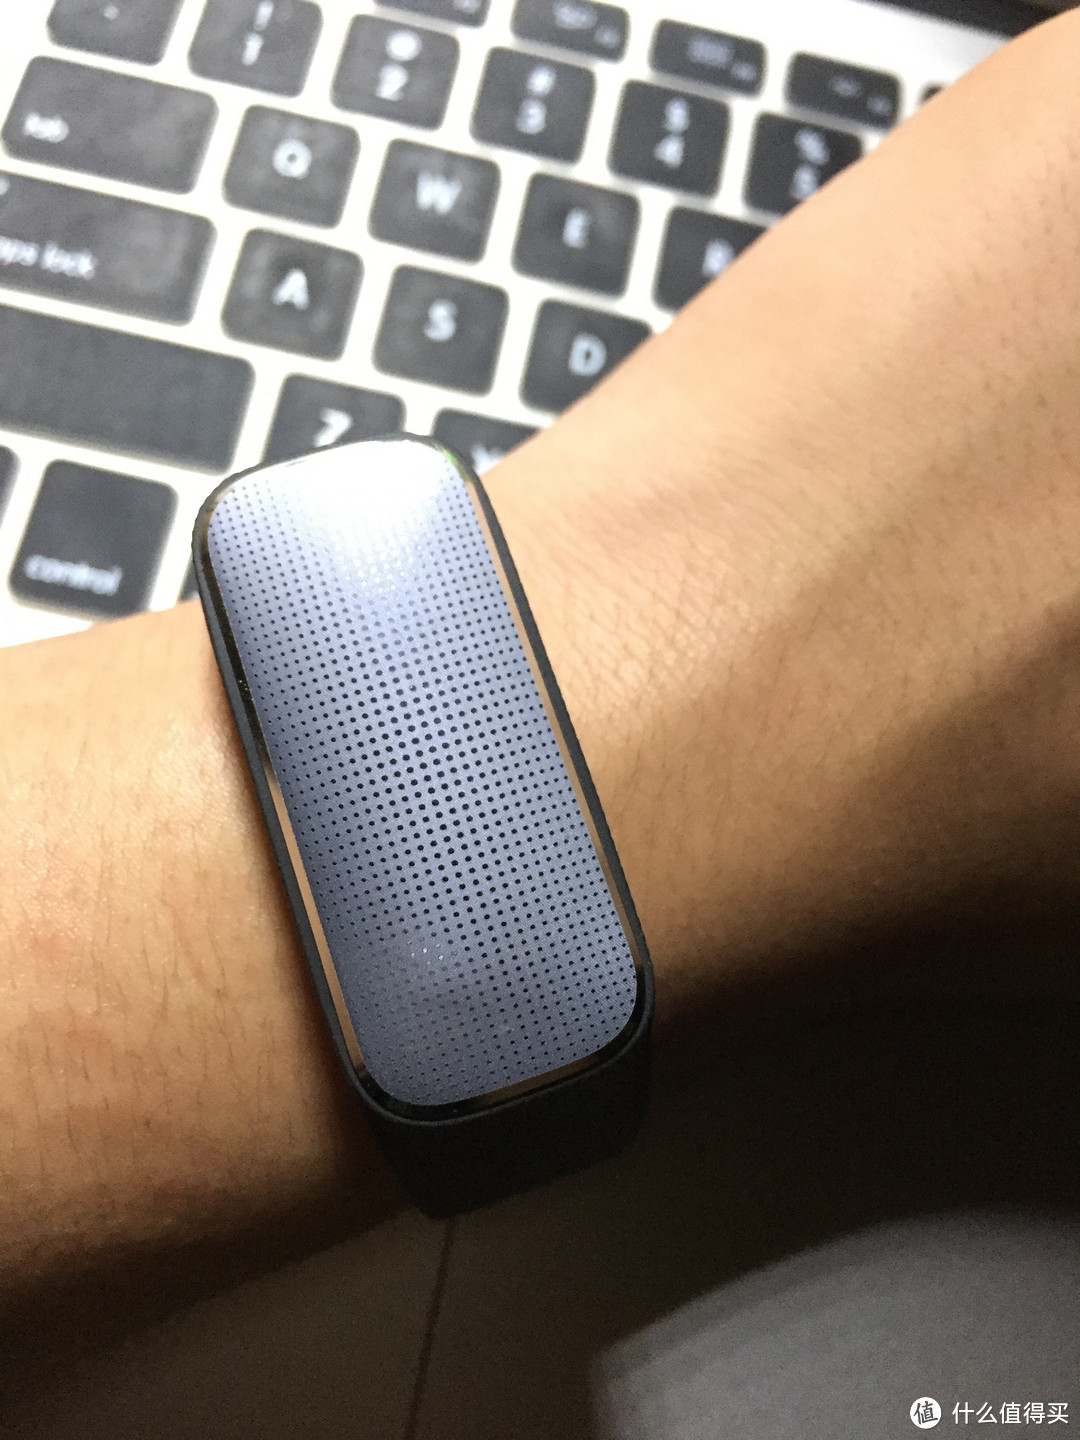 百元心率测定手环 37度 智能手环评测 附上bong2 小米手环 Apple watch对比